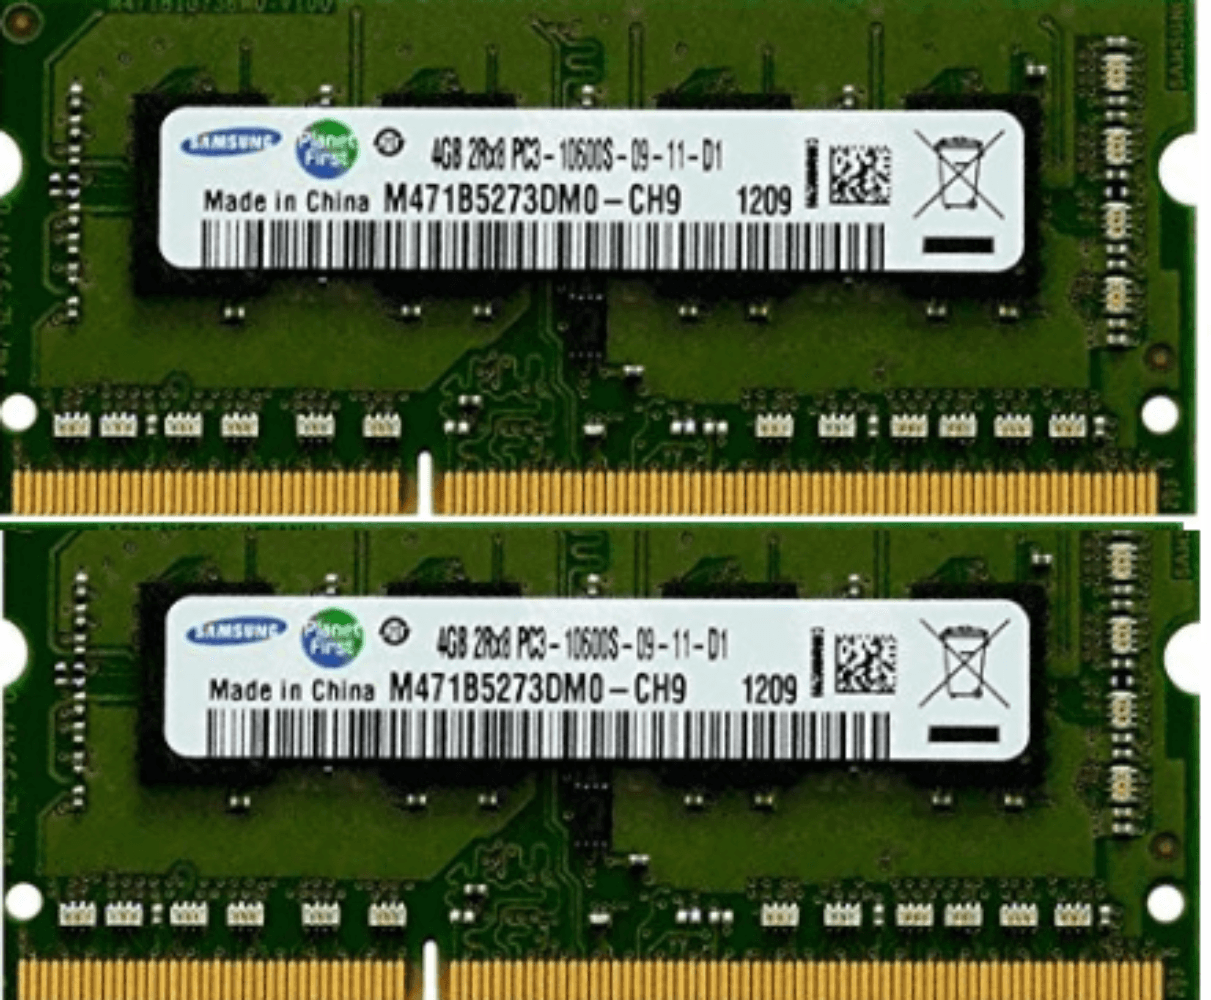 DDR3-1600-SODIMM - Samsung Original 8GB (4GBx2) DDR3 1333MHz (PC3-10600) SODIMM 204-Pin Memory - M471B5273DH0-CH9